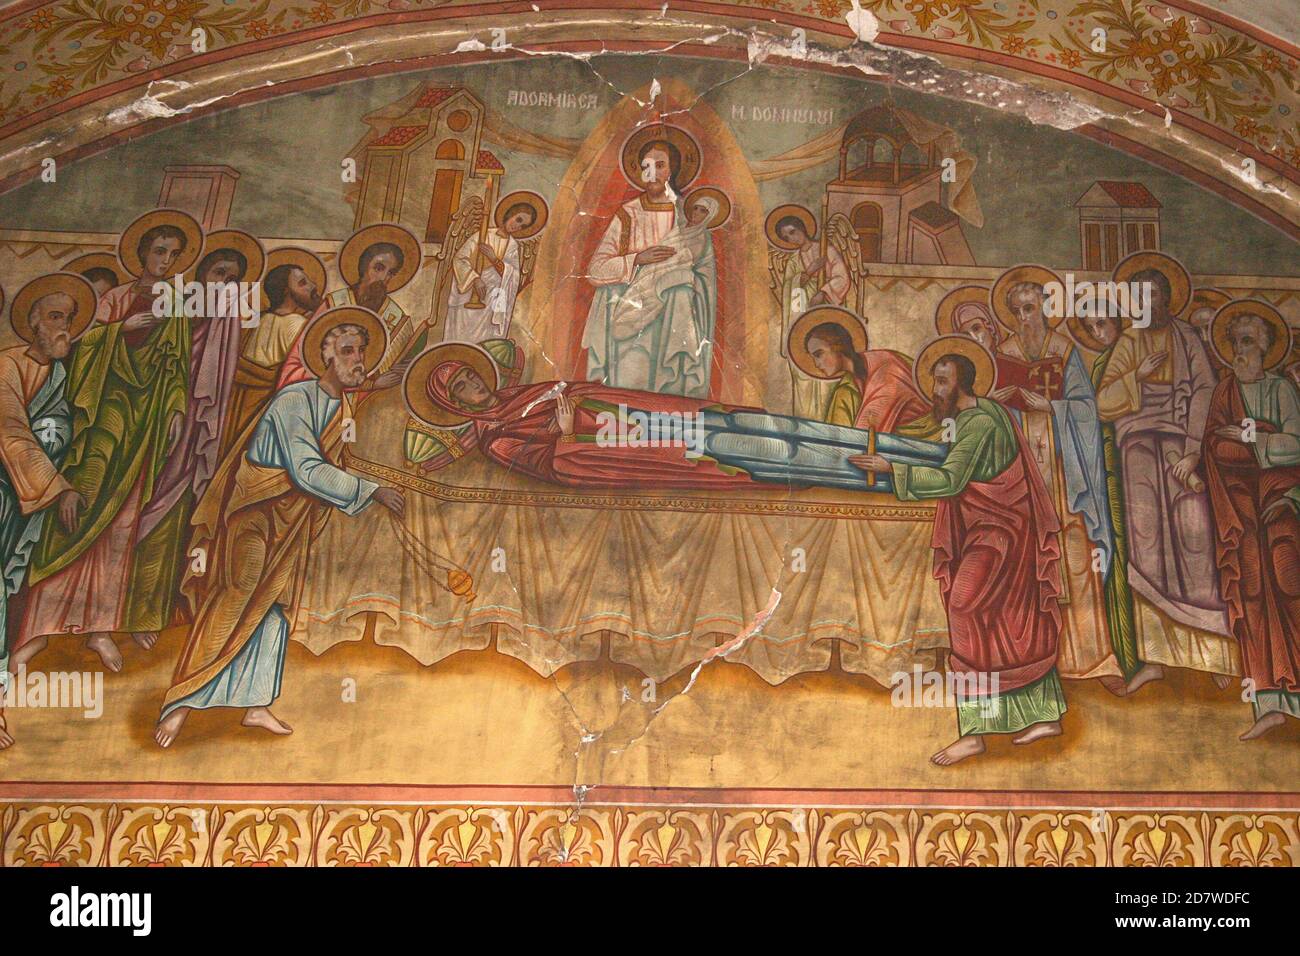 La chiesa cristiana ortodossa di Tifesti, Contea di Vrancea, Romania. Affresco raffigurante la Dormizione della Madre di Dio. Foto Stock